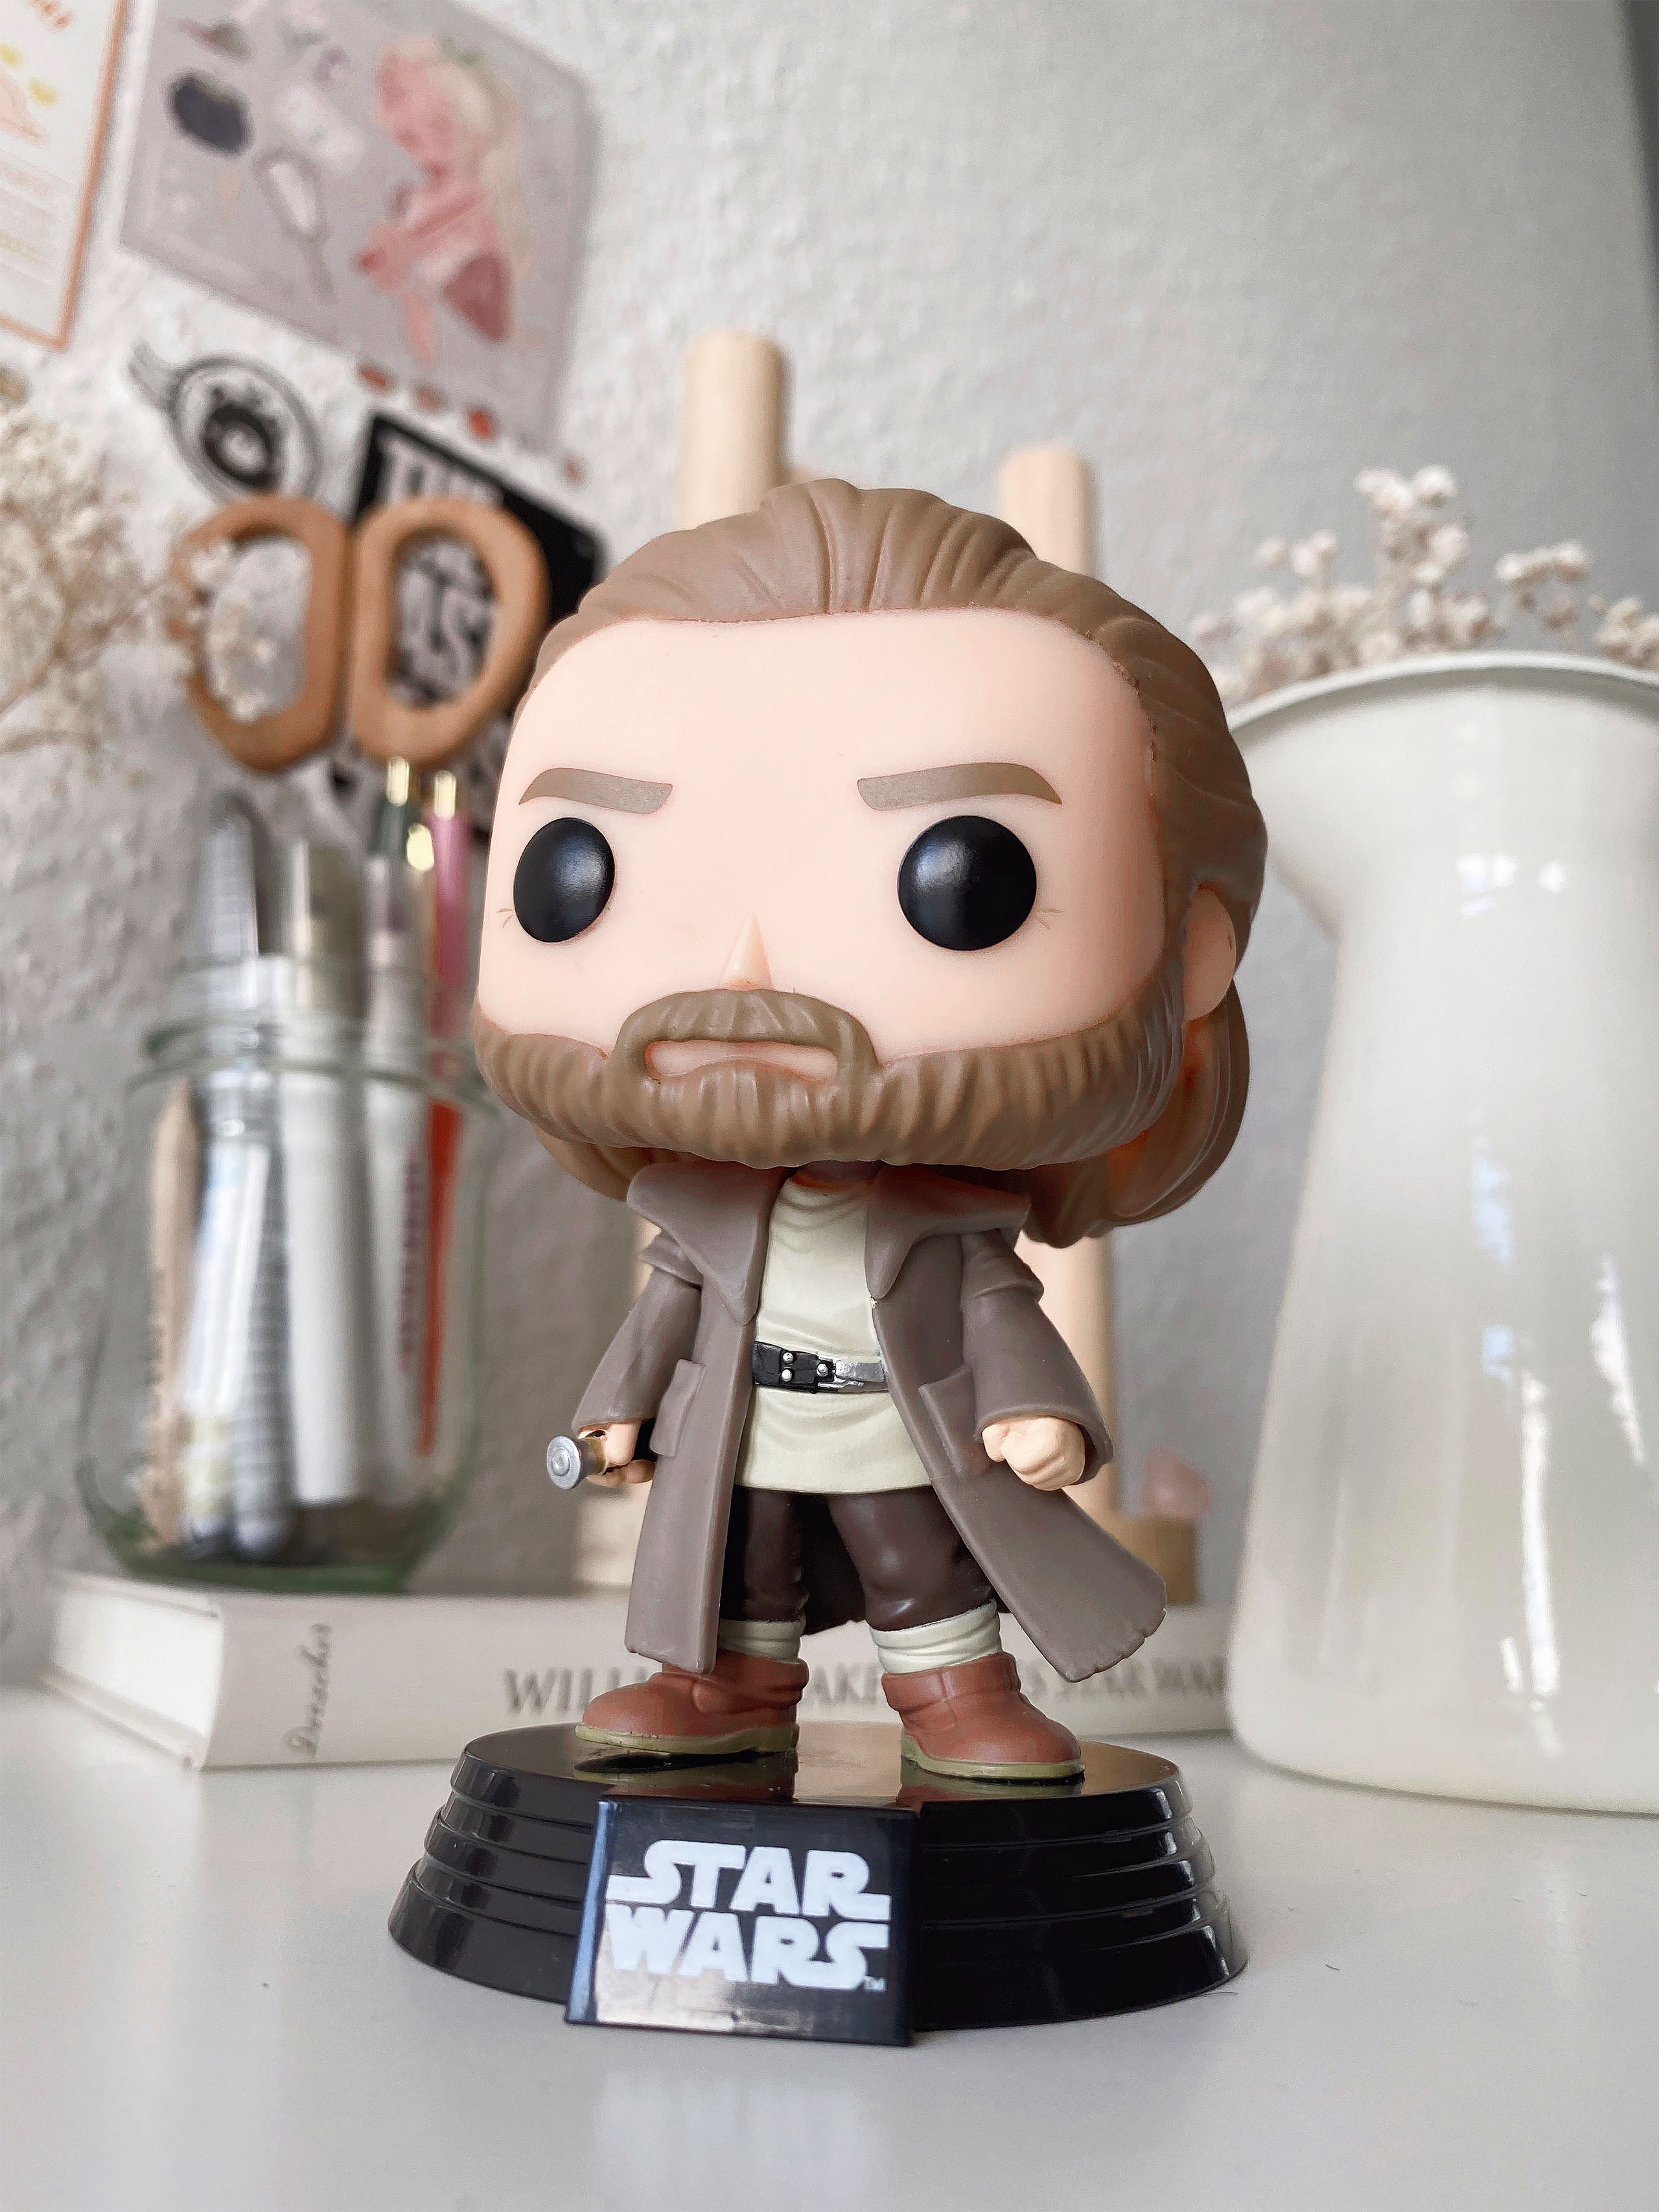 Obi-Wan Kenobi Funko Pop bobblehead figure - Star Wars